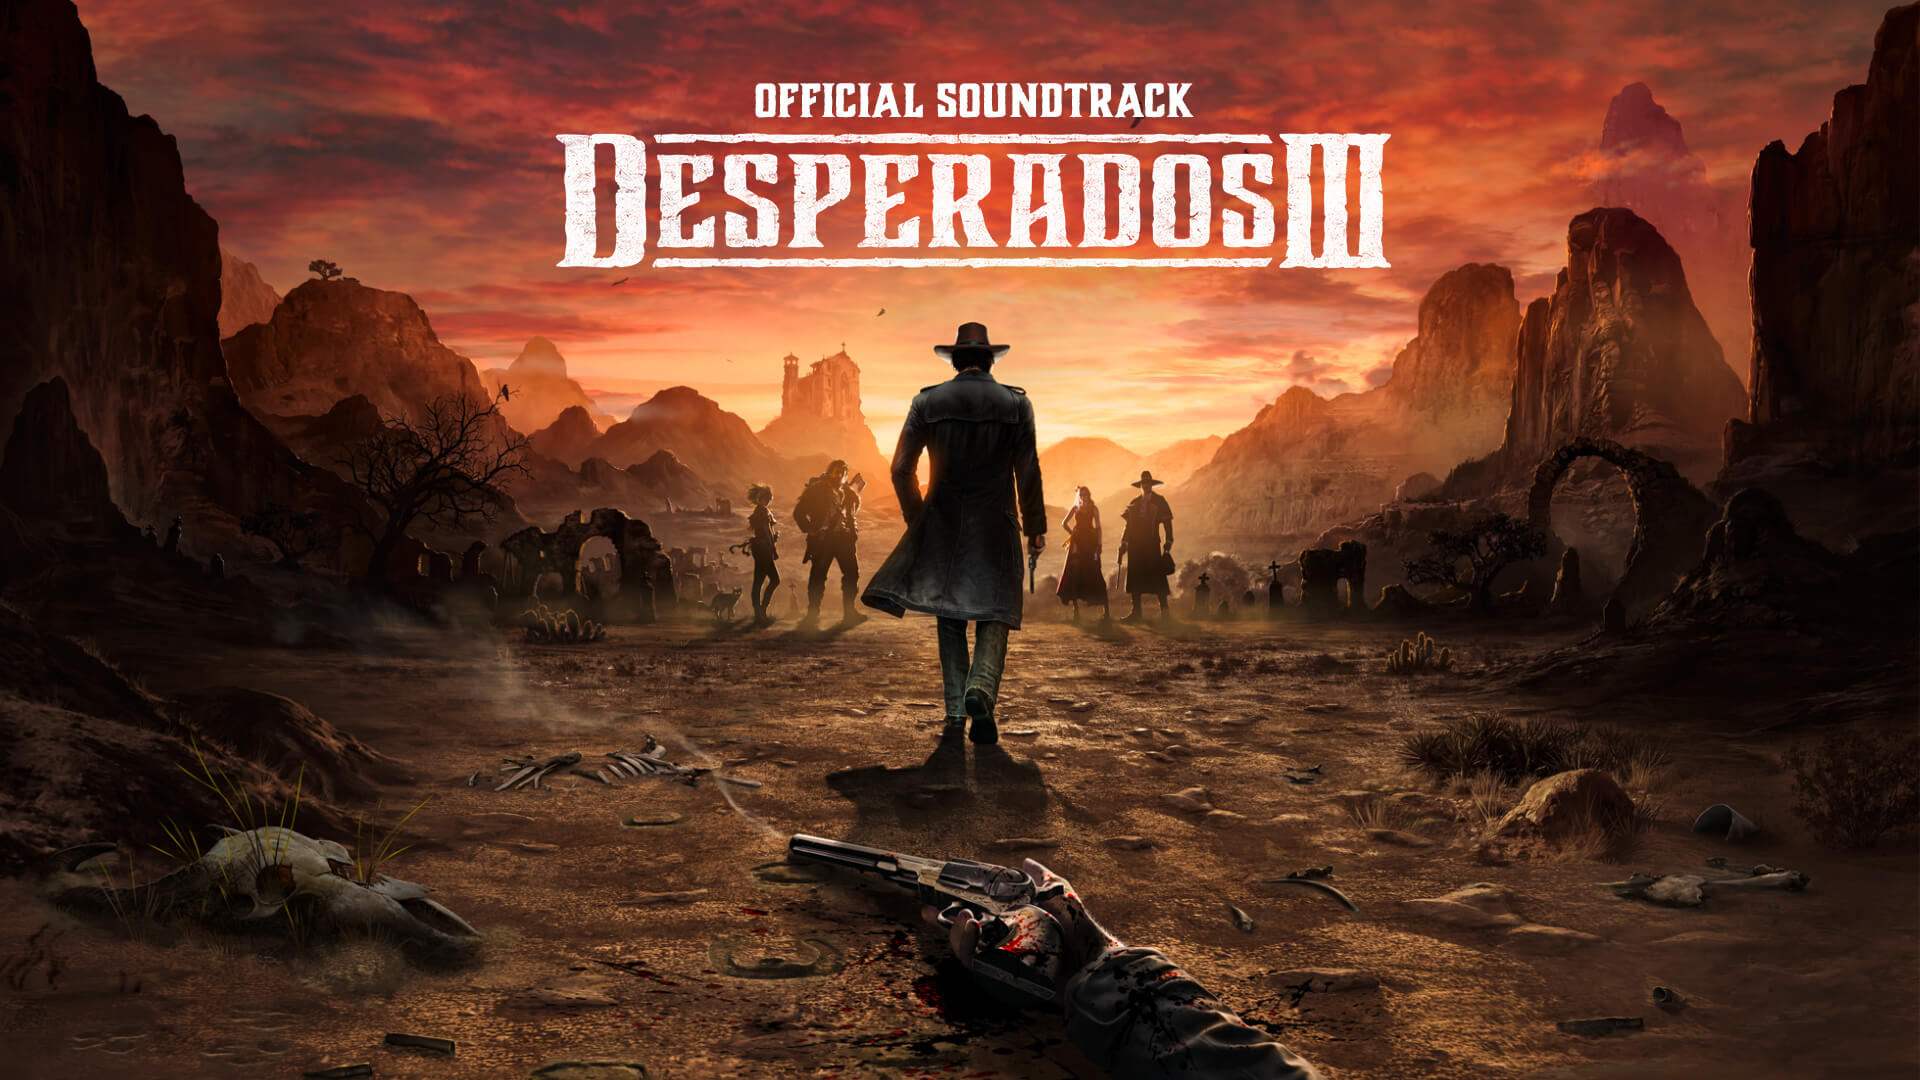 [$ 4.51] Desperados III - Soundtrack DLC Steam CD Key